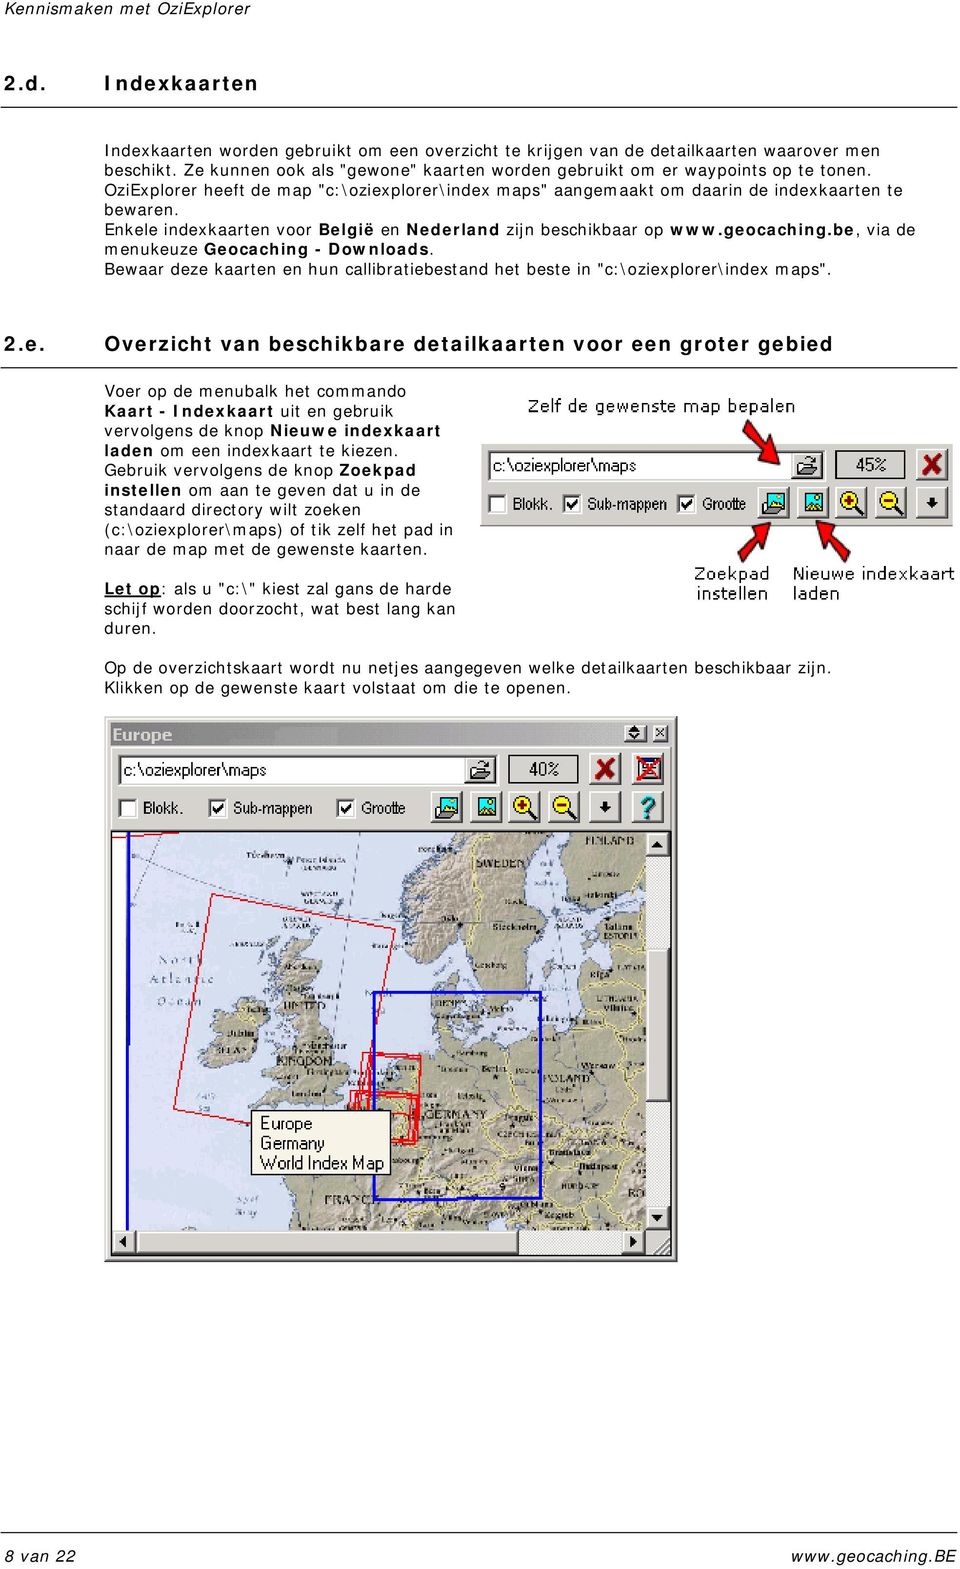 Enkele indexkaarten voor België en Nederland zijn beschikbaar op www.geocaching.be, via de menukeuze Geocaching - Downloads.